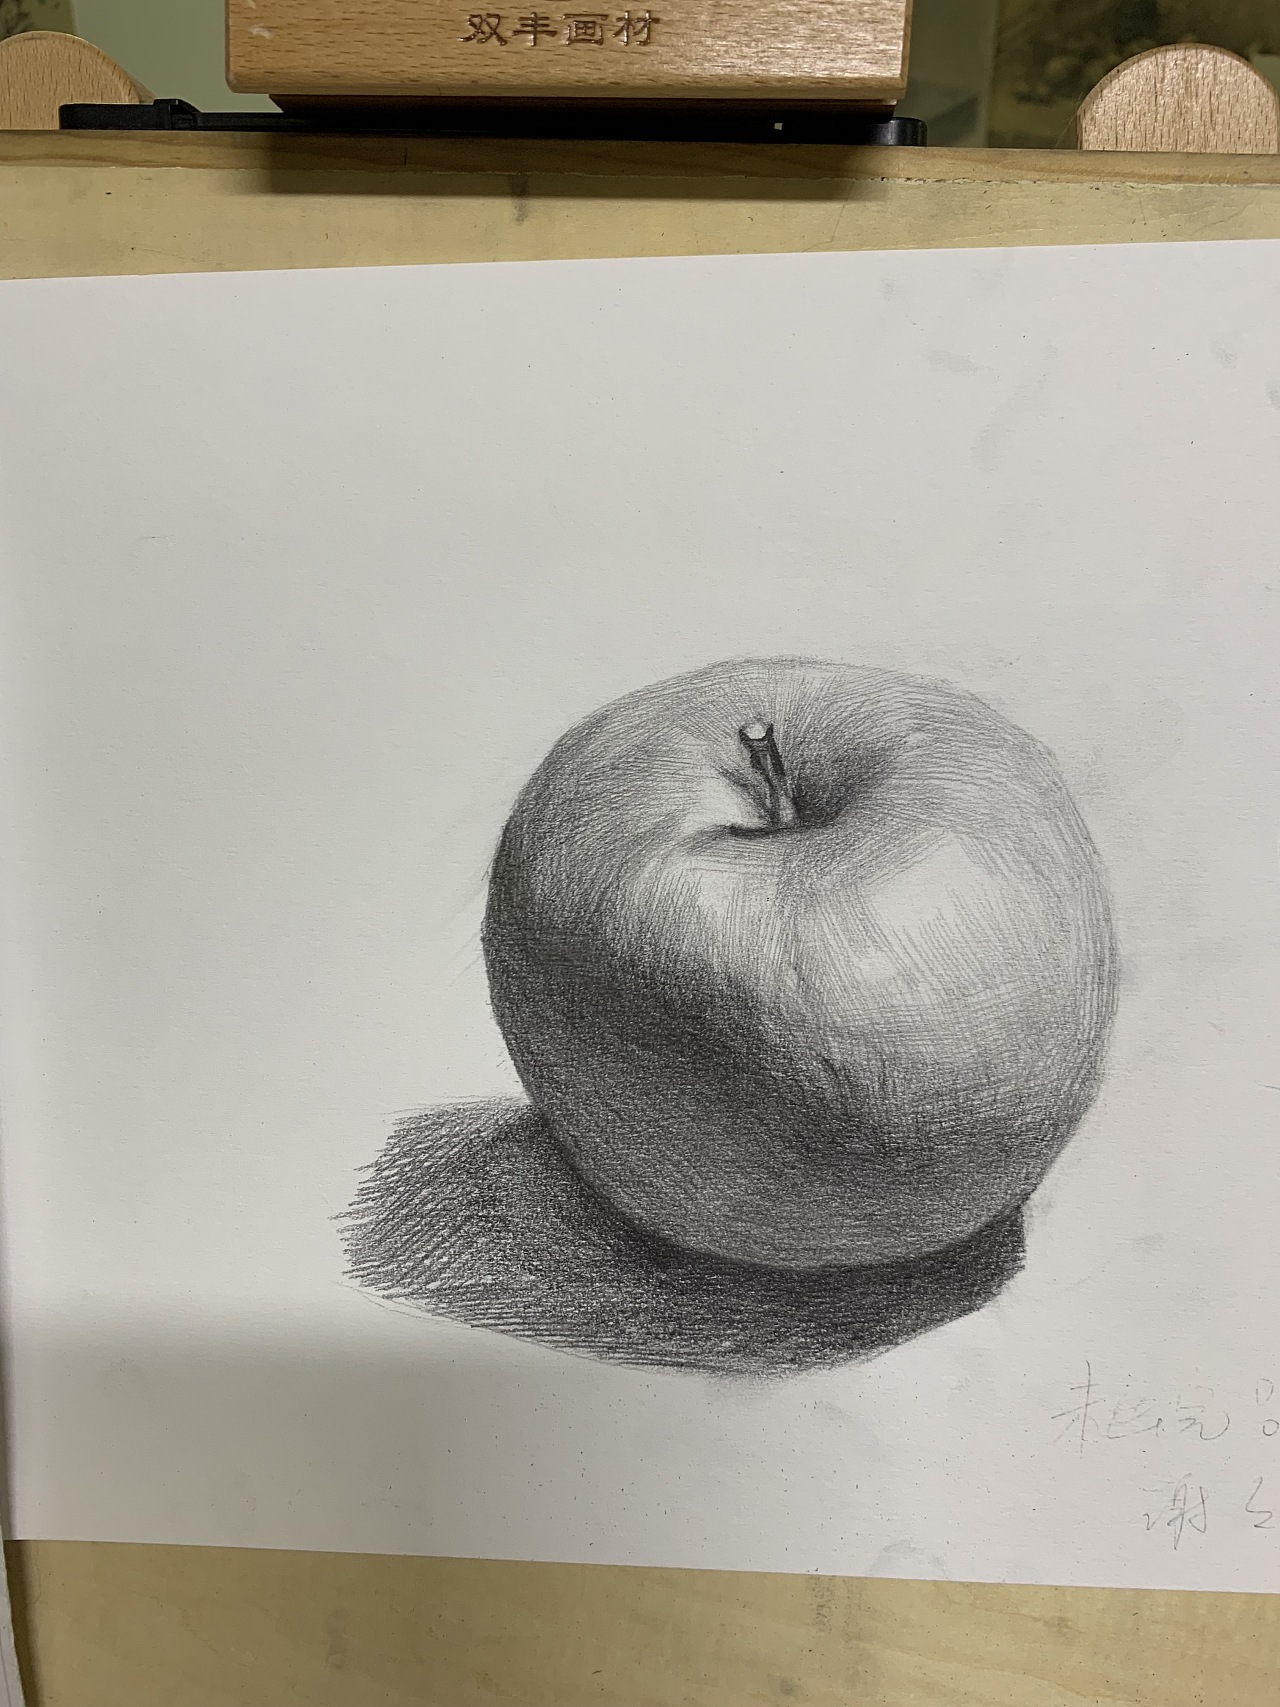 素描画水果单个易画图片